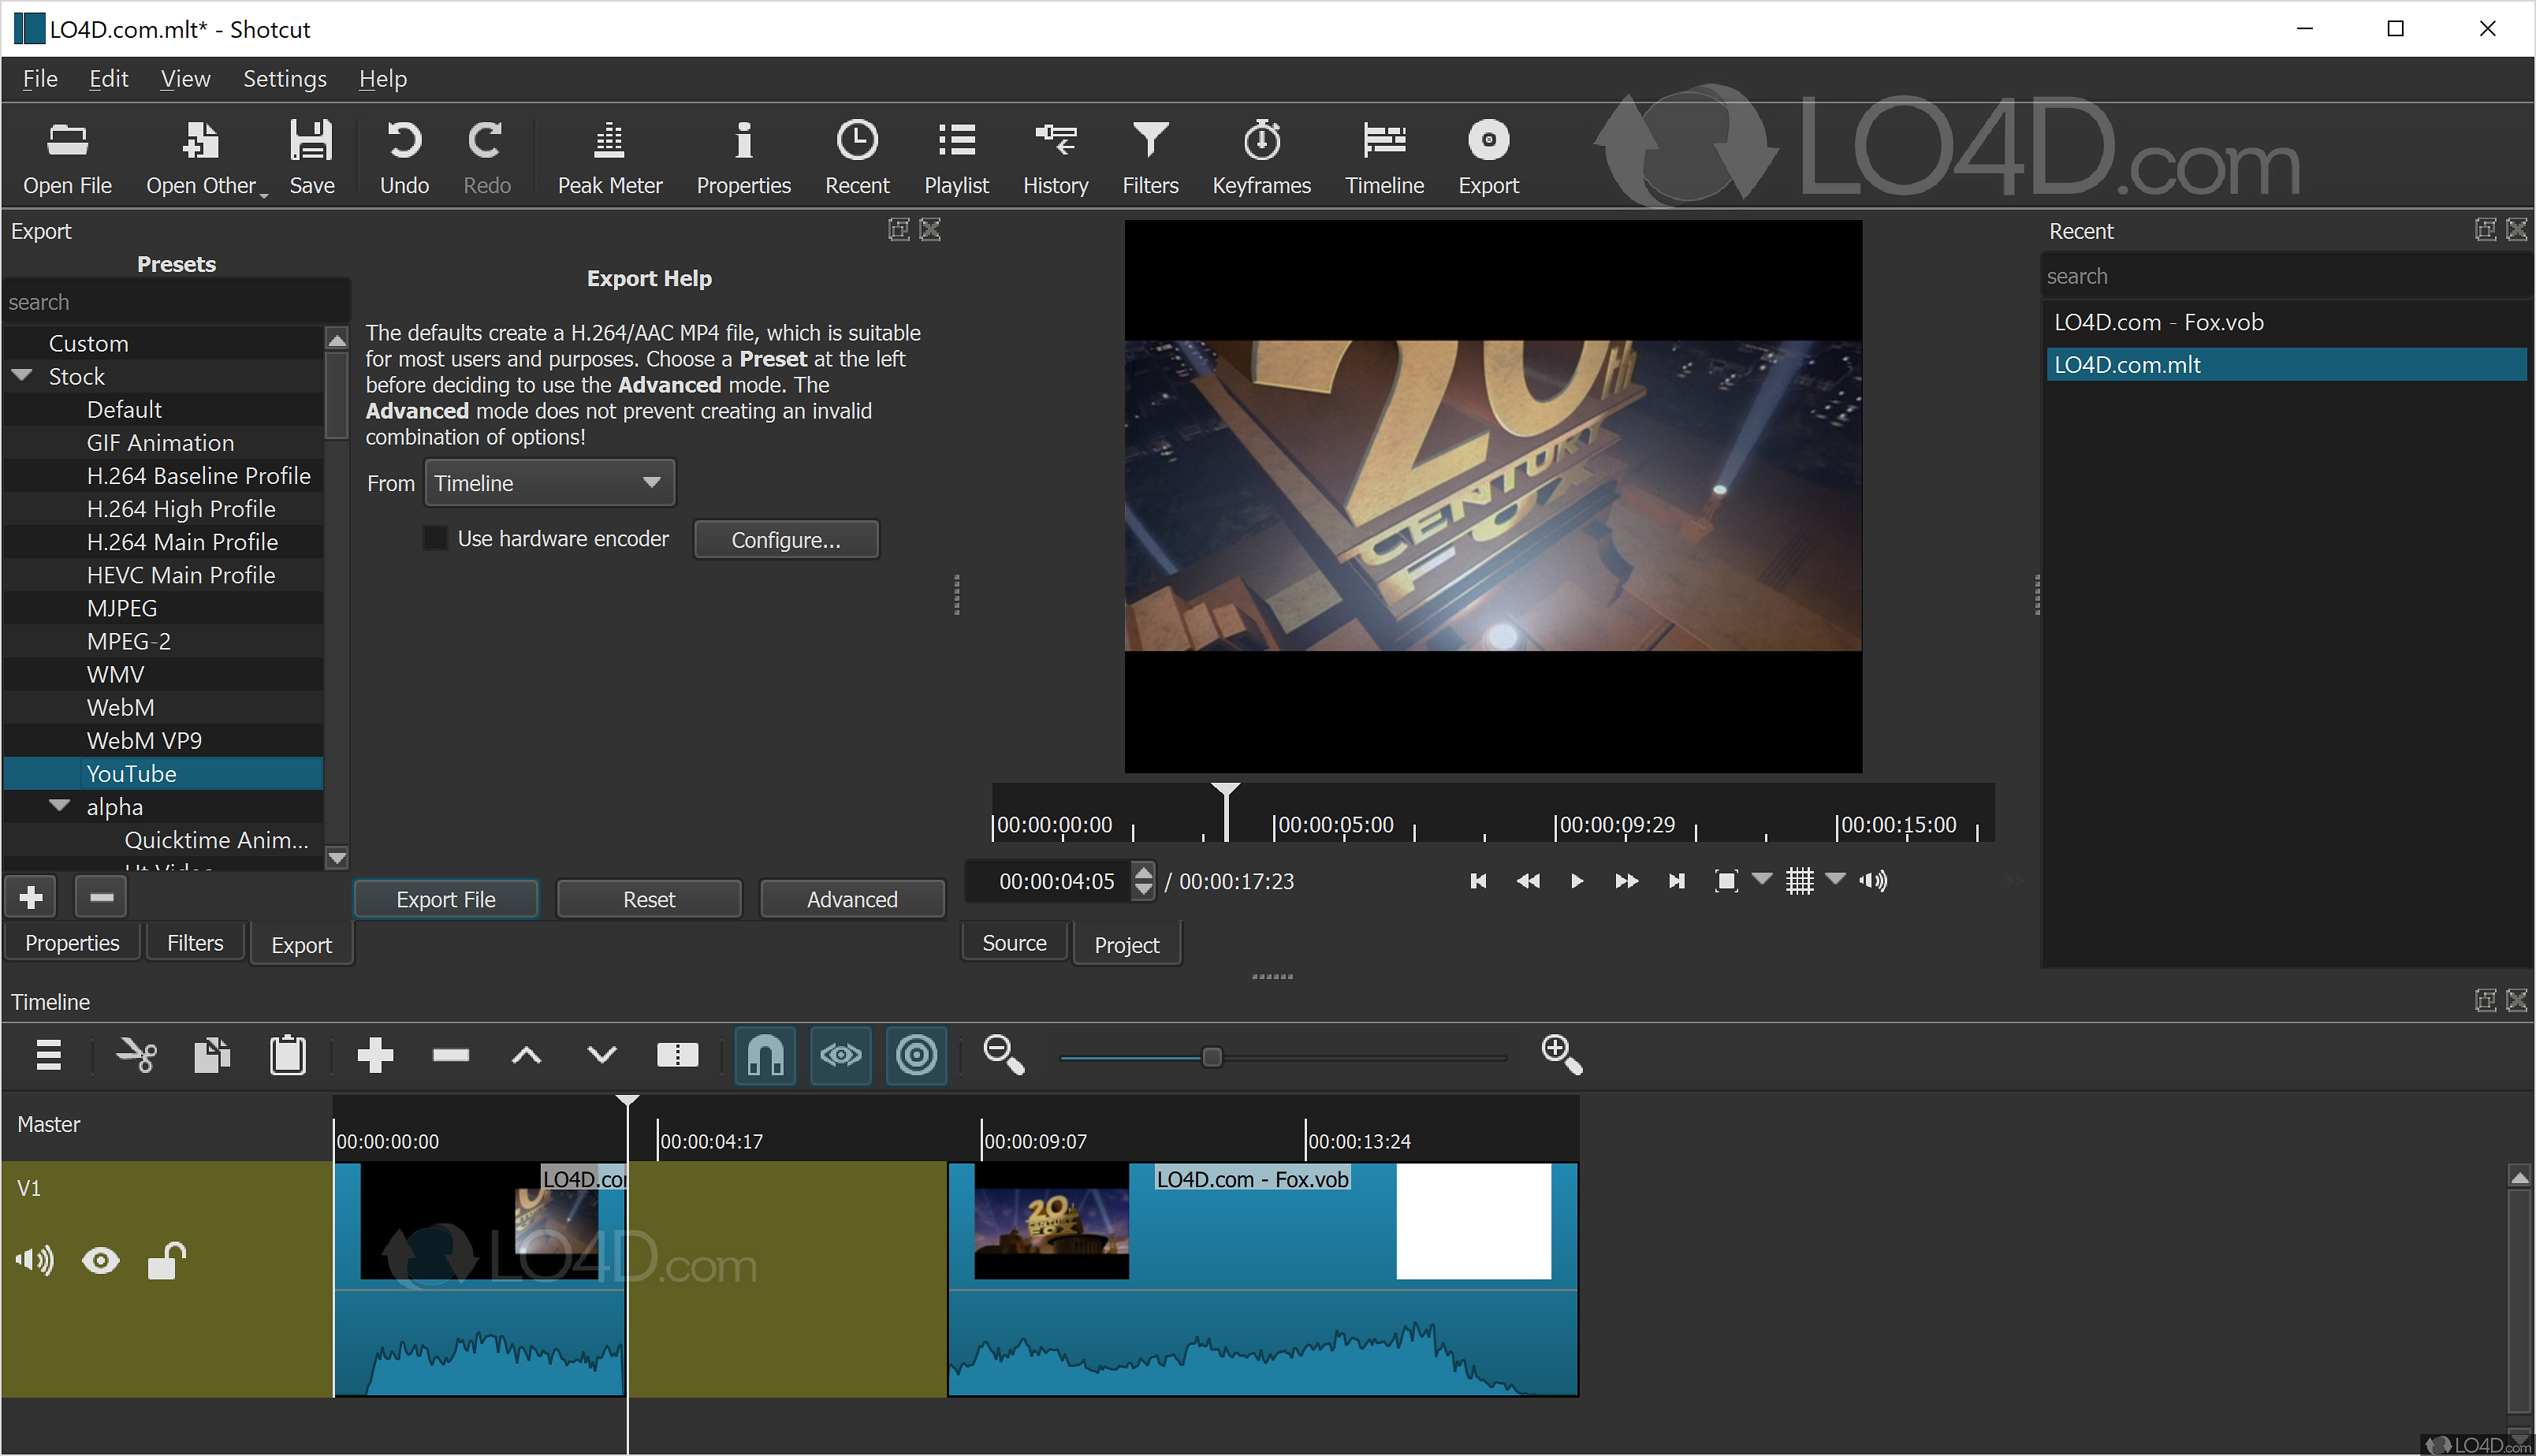 shotcut video editor 32 bit download